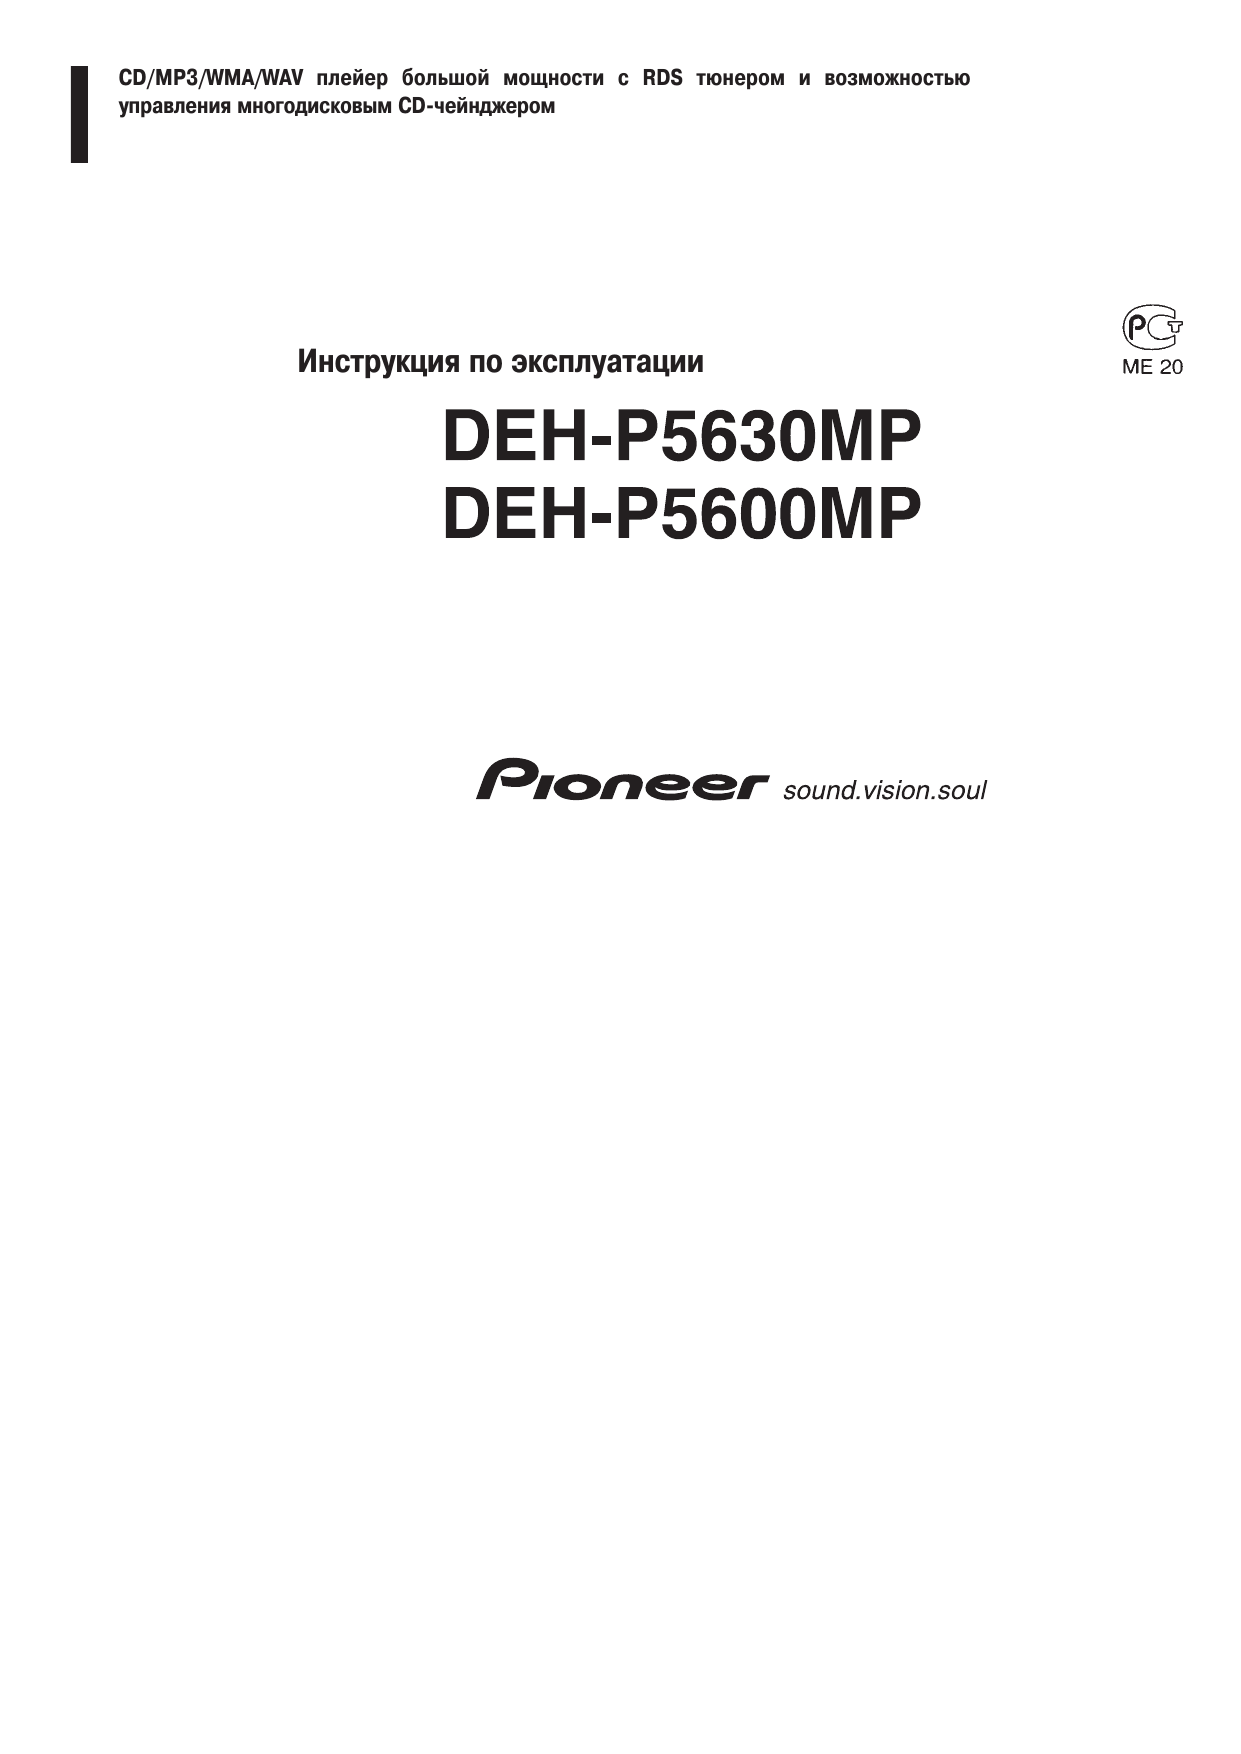 Pioneer deh-p5630mp. Pioneer deh-p5600mp. Pioneer deh-p5600mp инструкция. Pioneer deh 5630mp инструкция.